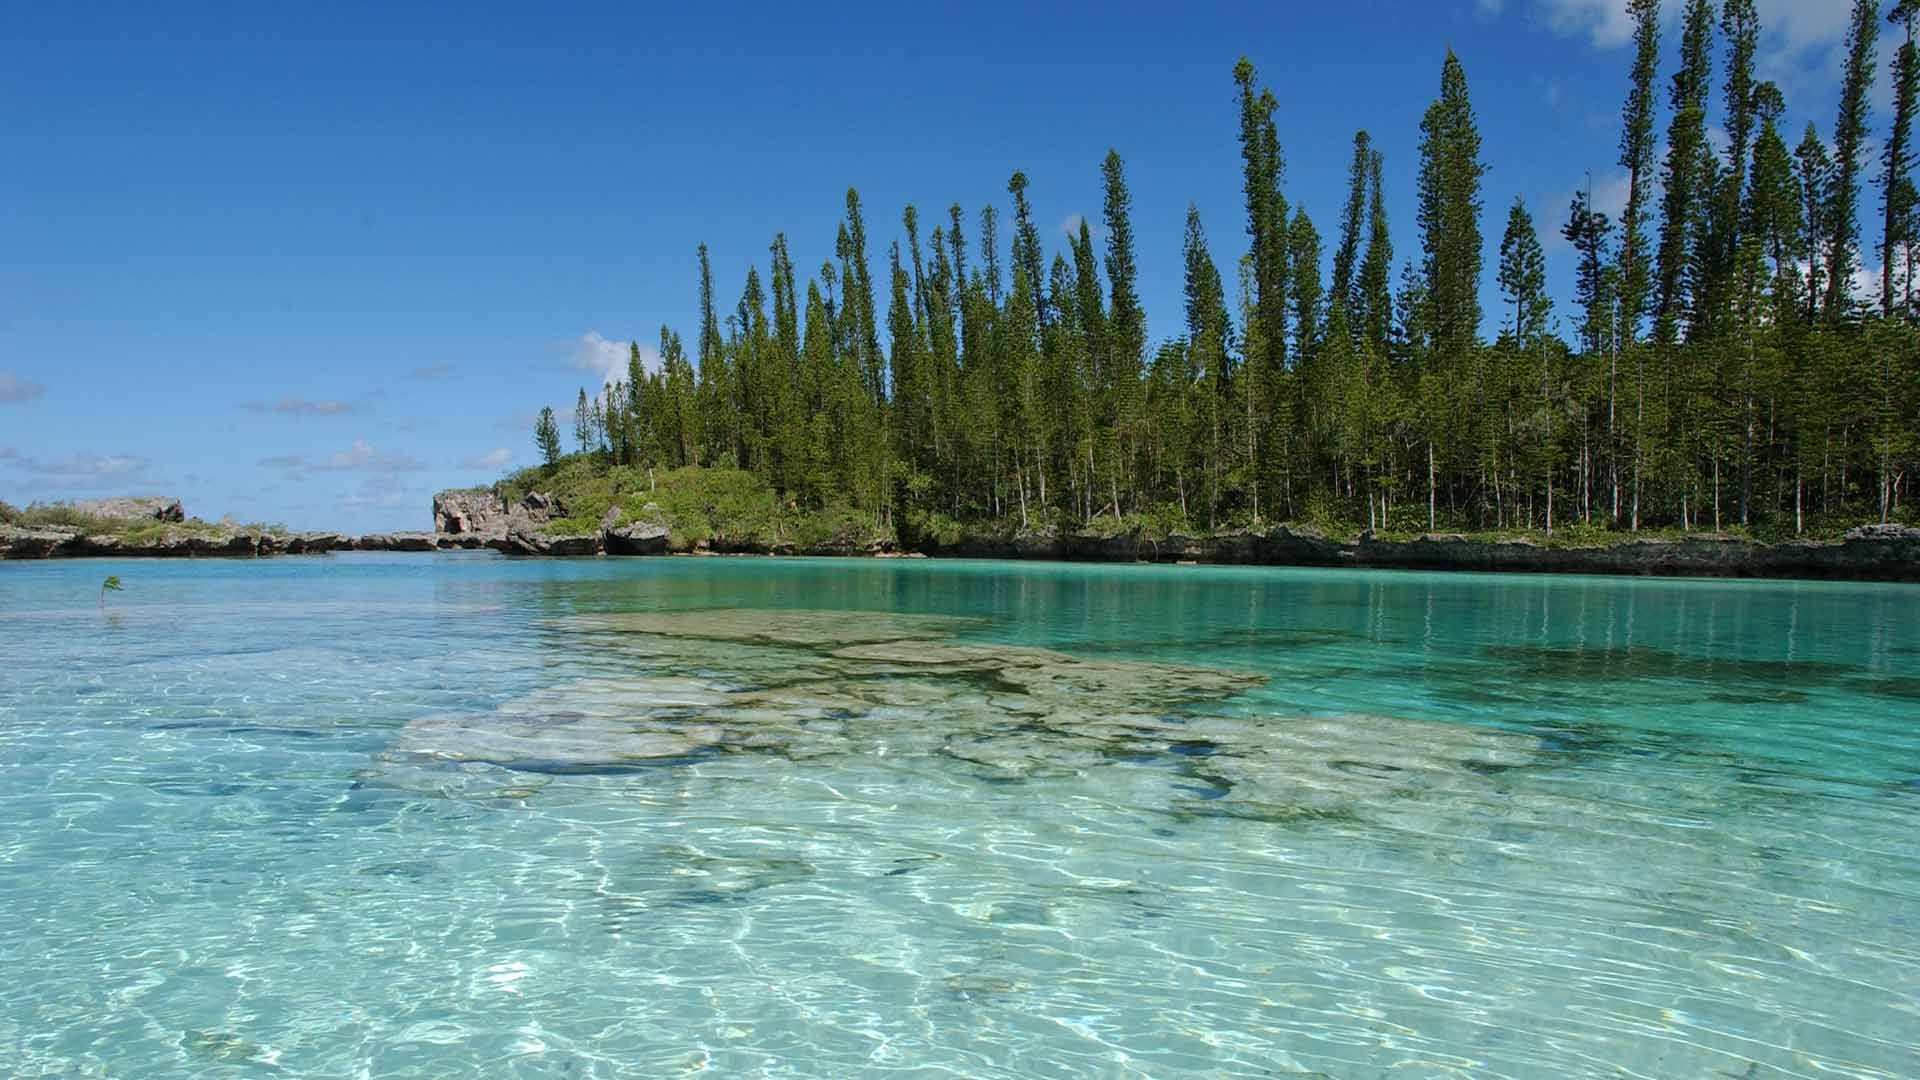 Tourisme en Outre-mer : L’île des Pins, 2nde meilleure destination en Asie-Pacifique pour les croisiéristes